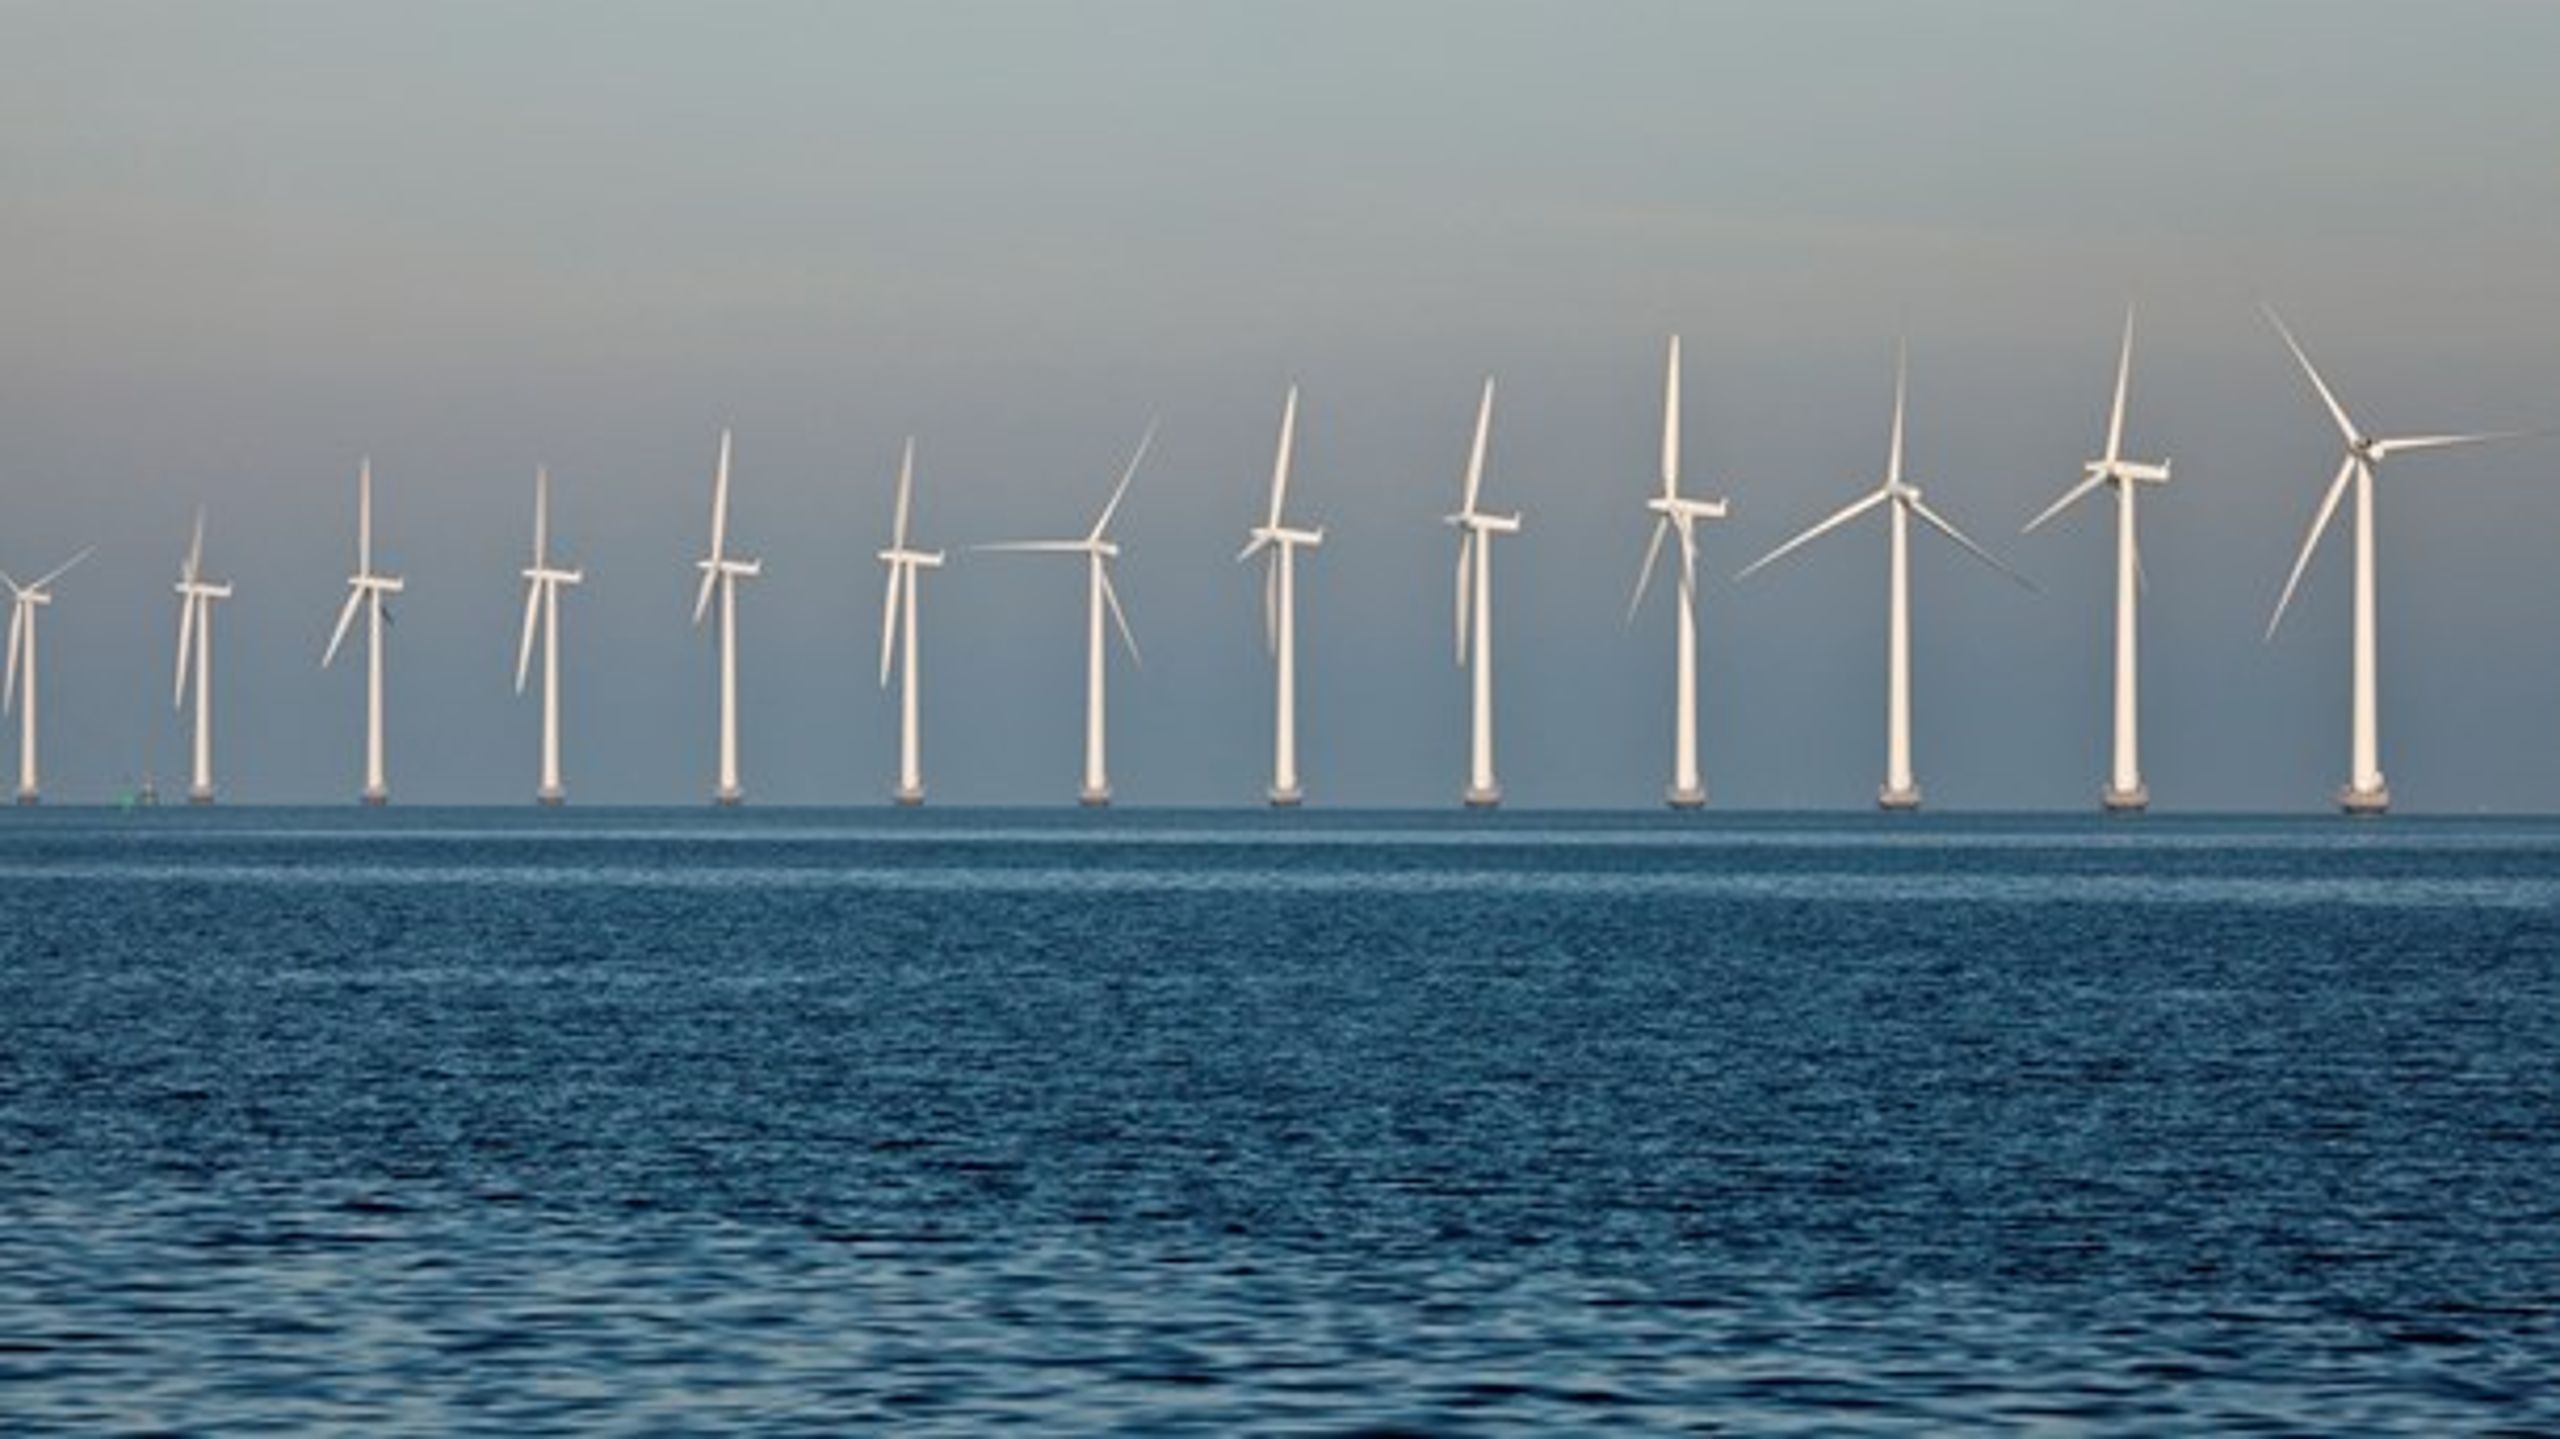 Danmarks iver efter at eksportere el fra vindmøller har taget overhånd, mener forsker fra Københavns Universitet.